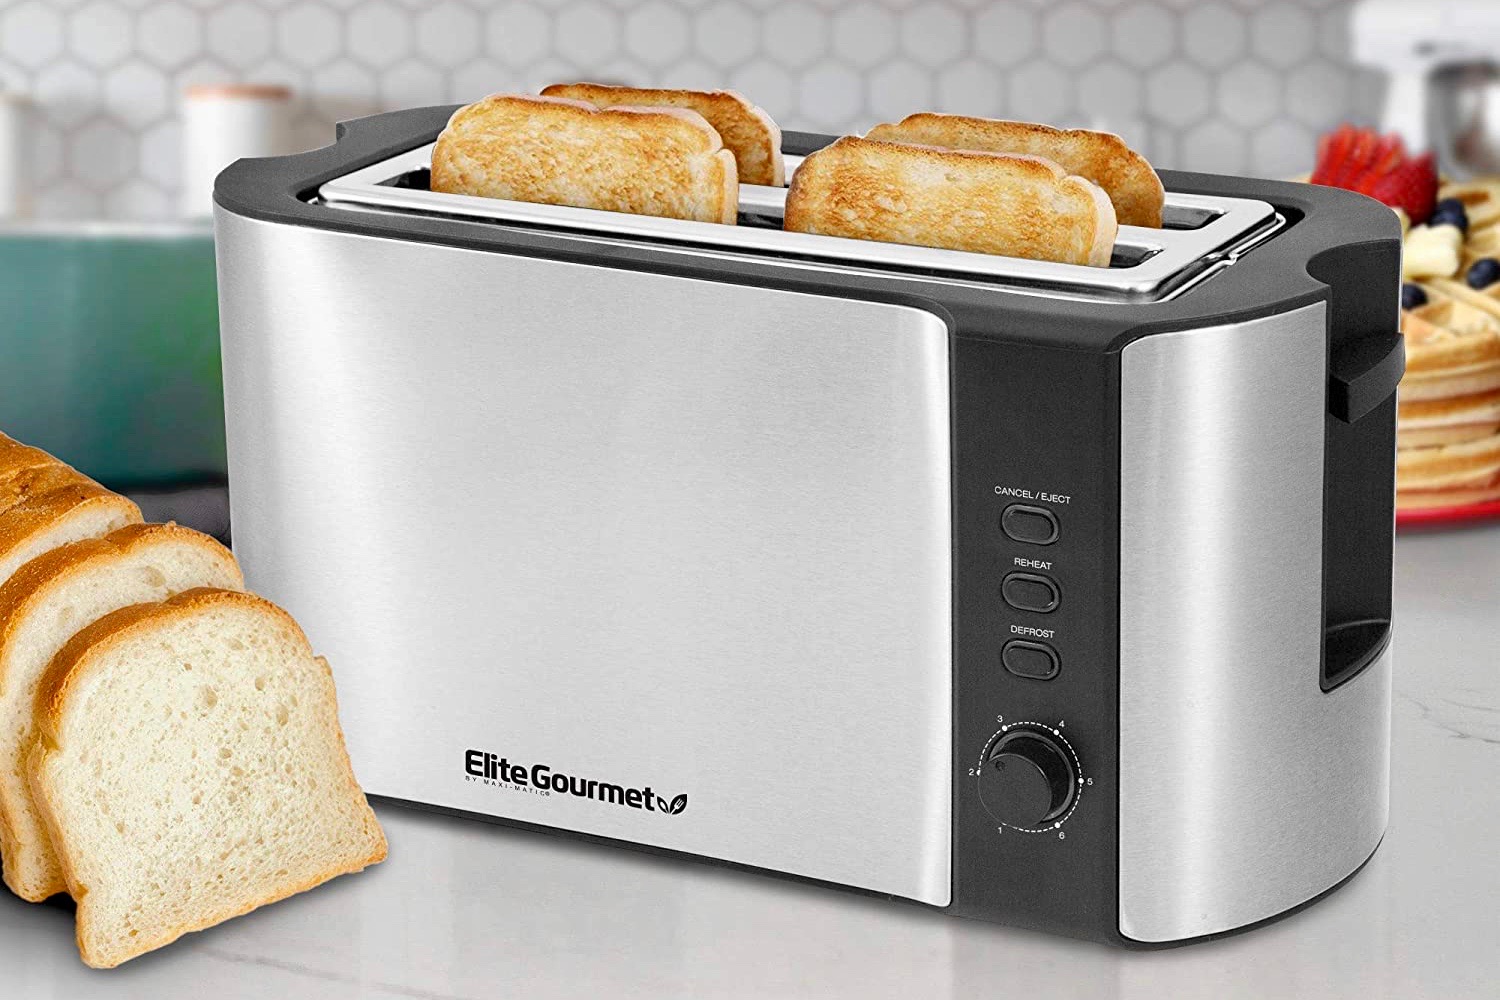 https://www.digitaltrends.com/wp-content/uploads//2021/01/elite-gourmet-best-toasters-1.jpg?p=1